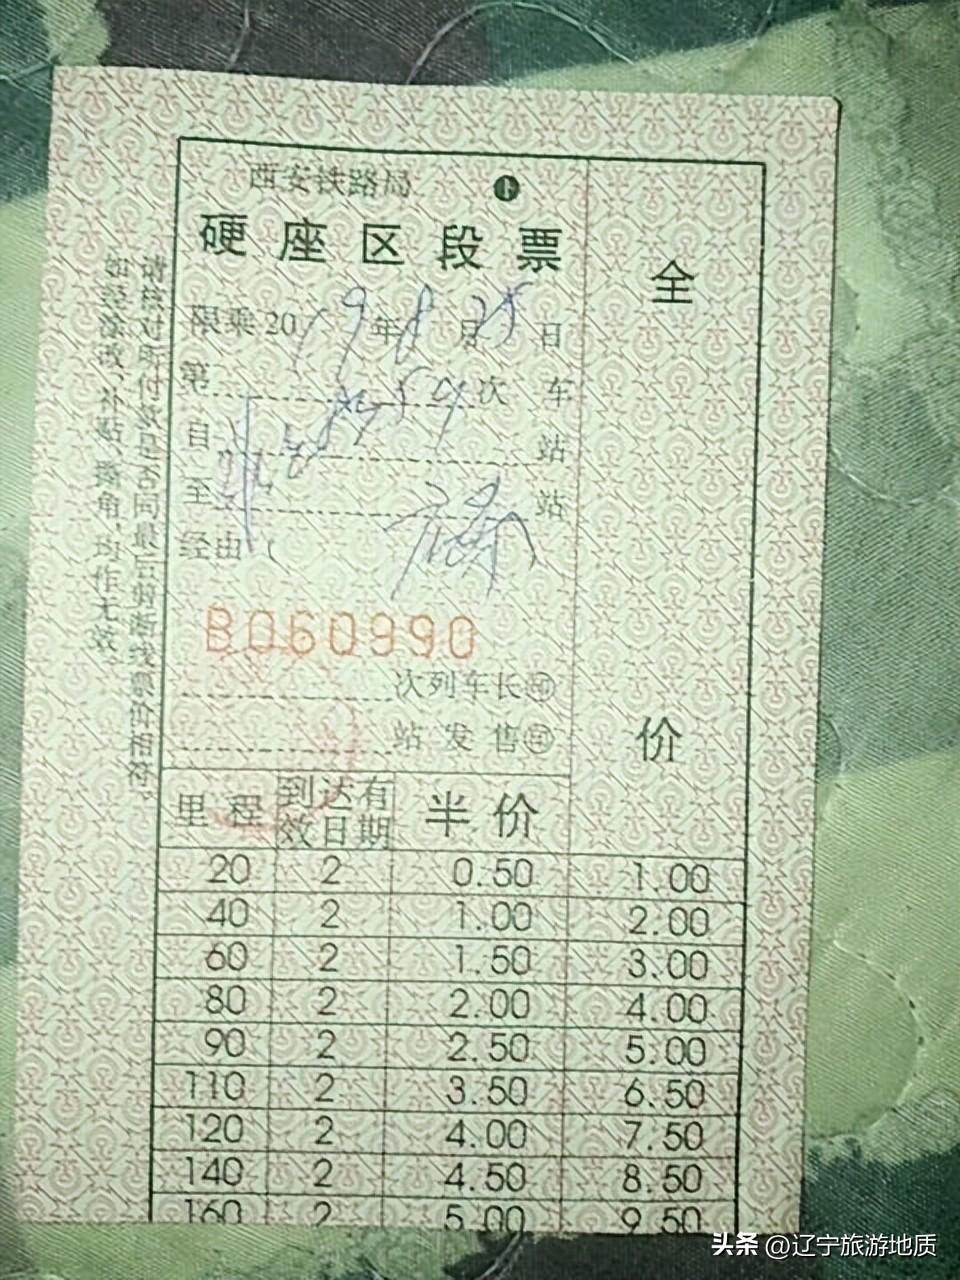 中国最便宜的火车票仅售1元,全国最便宜的火车票:最低仅5毛钱